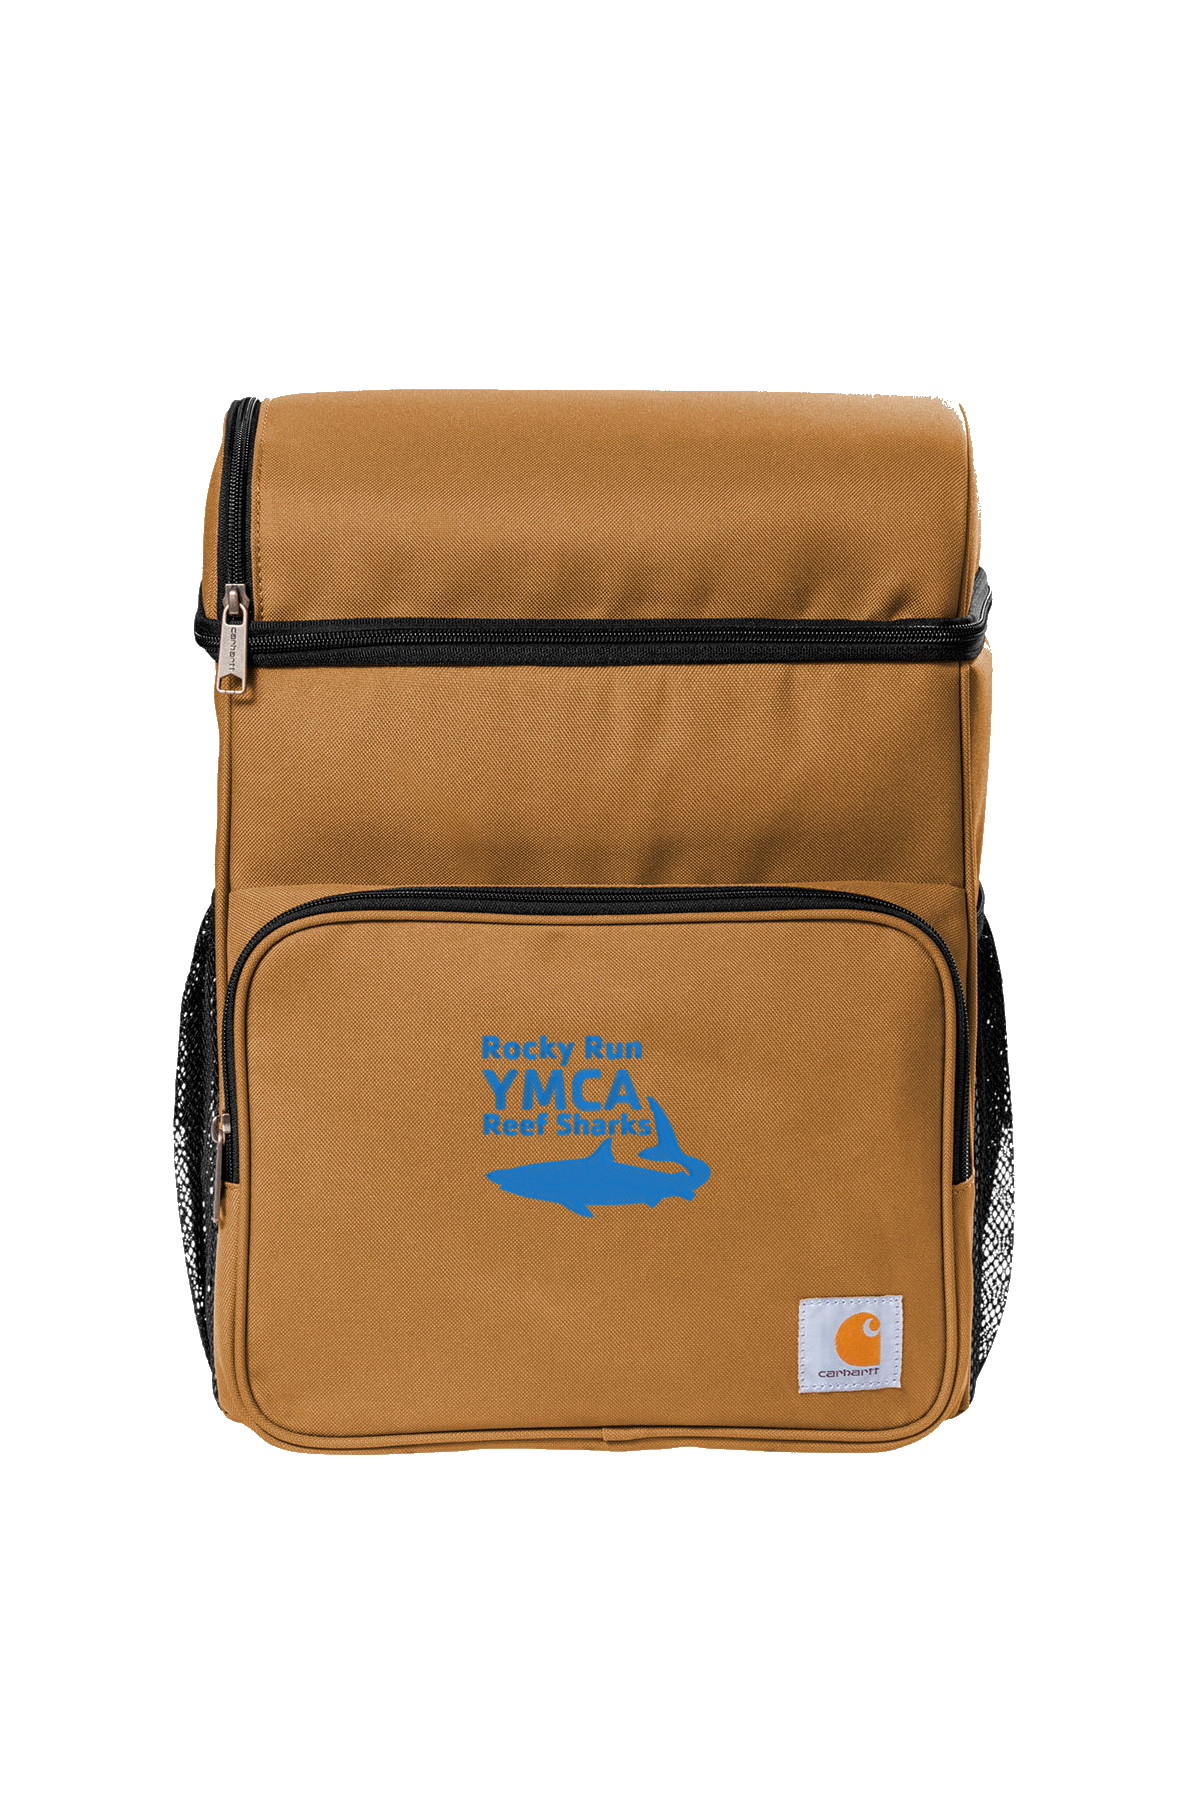 ROCKY RUN Carhartt Backpack 20-Can Cooler